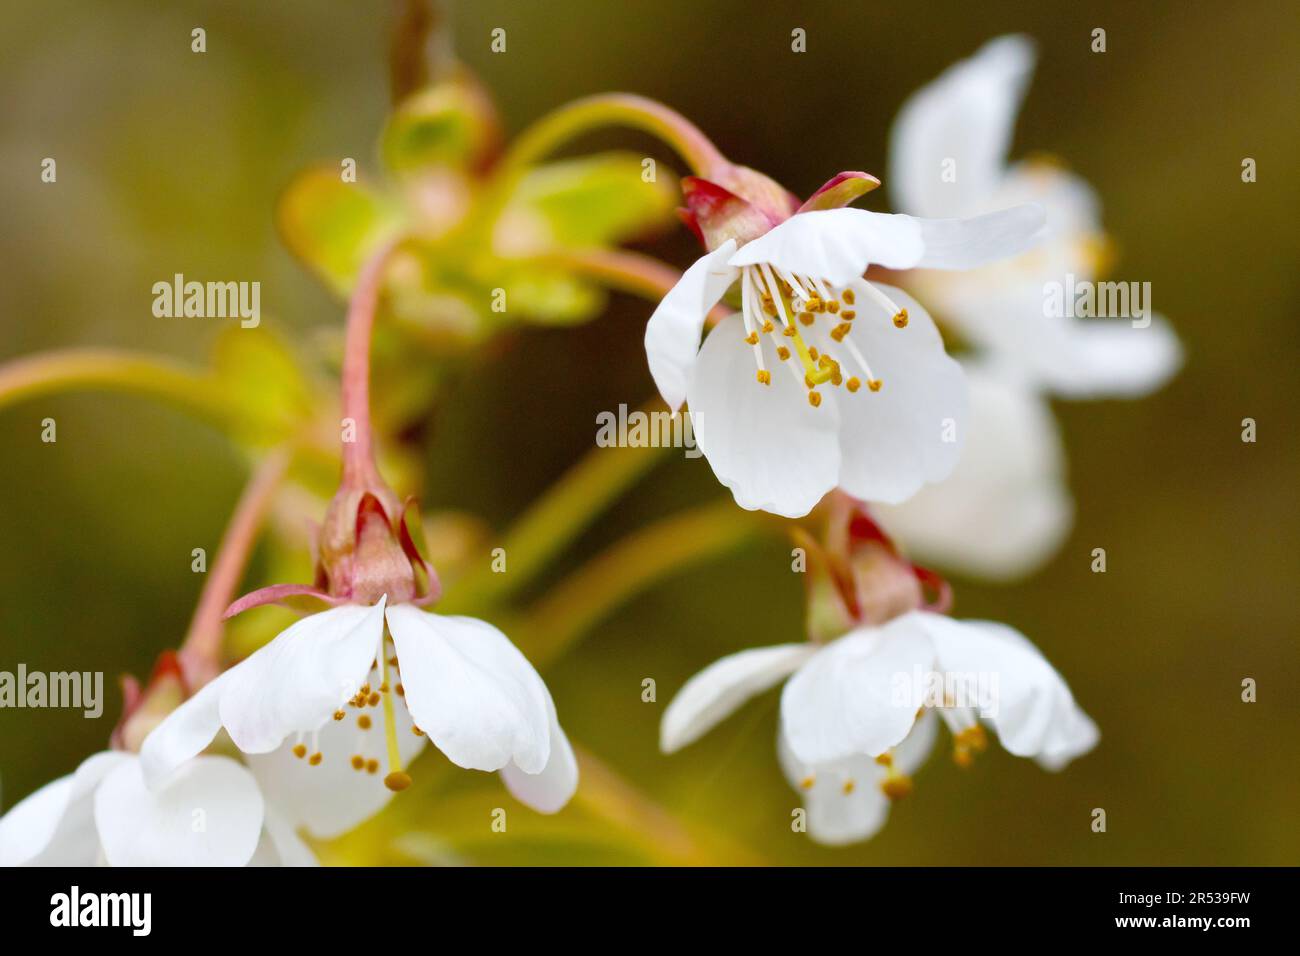 Cerisier sauvage (prunus avium), gros plan se concentrant sur une seule fleur blanche sur plusieurs nouveaux émergés sur un arbre au printemps. Banque D'Images